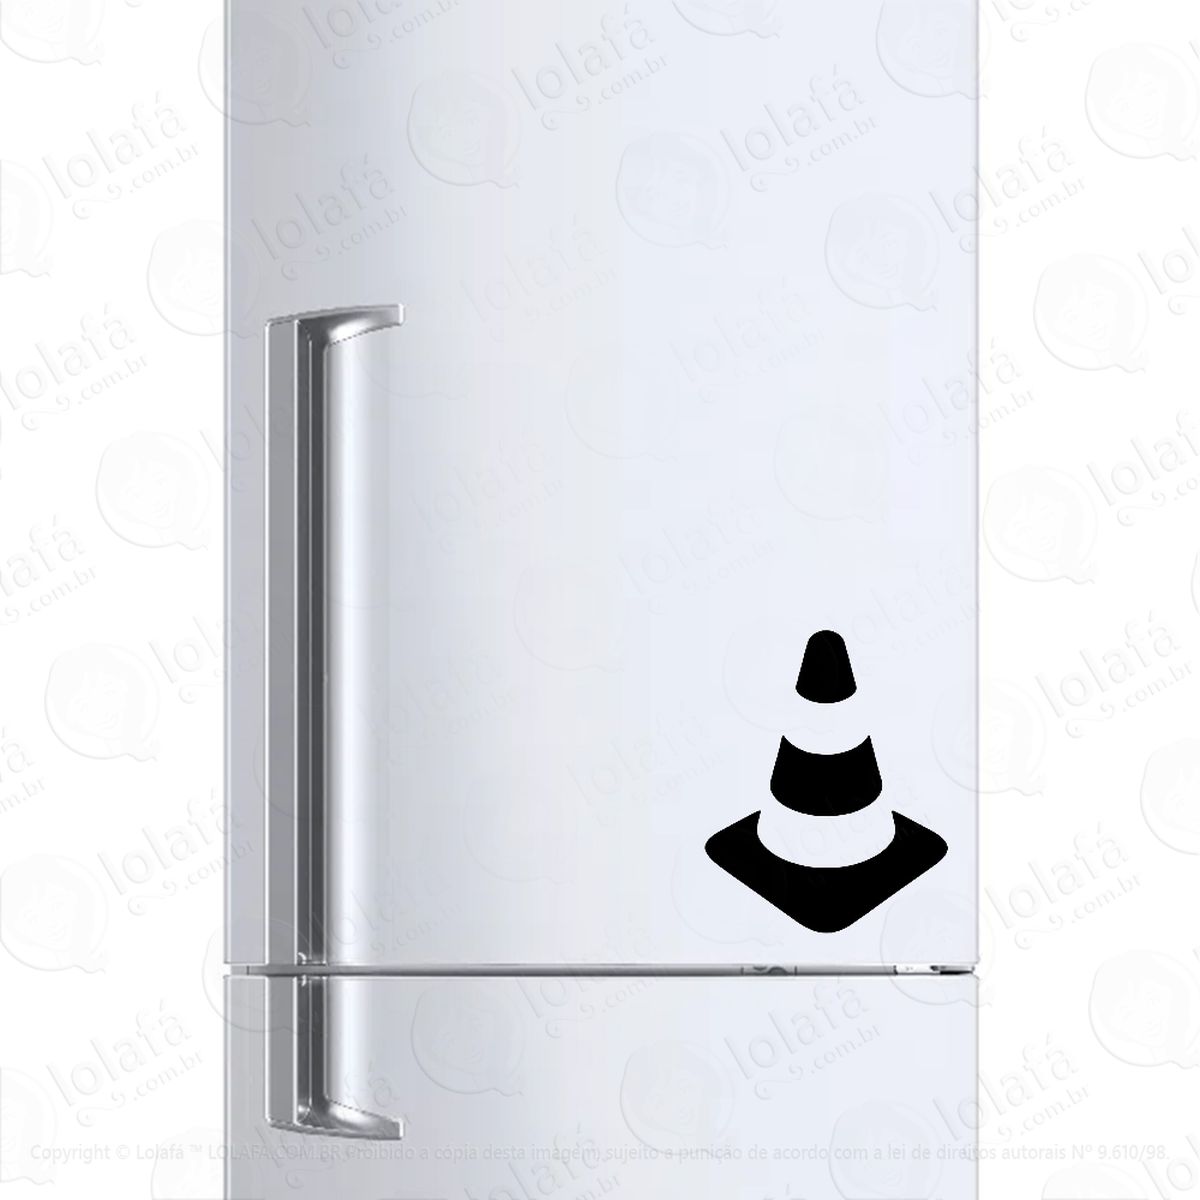 adesivo para geladeira cone transito sinalização mod:257